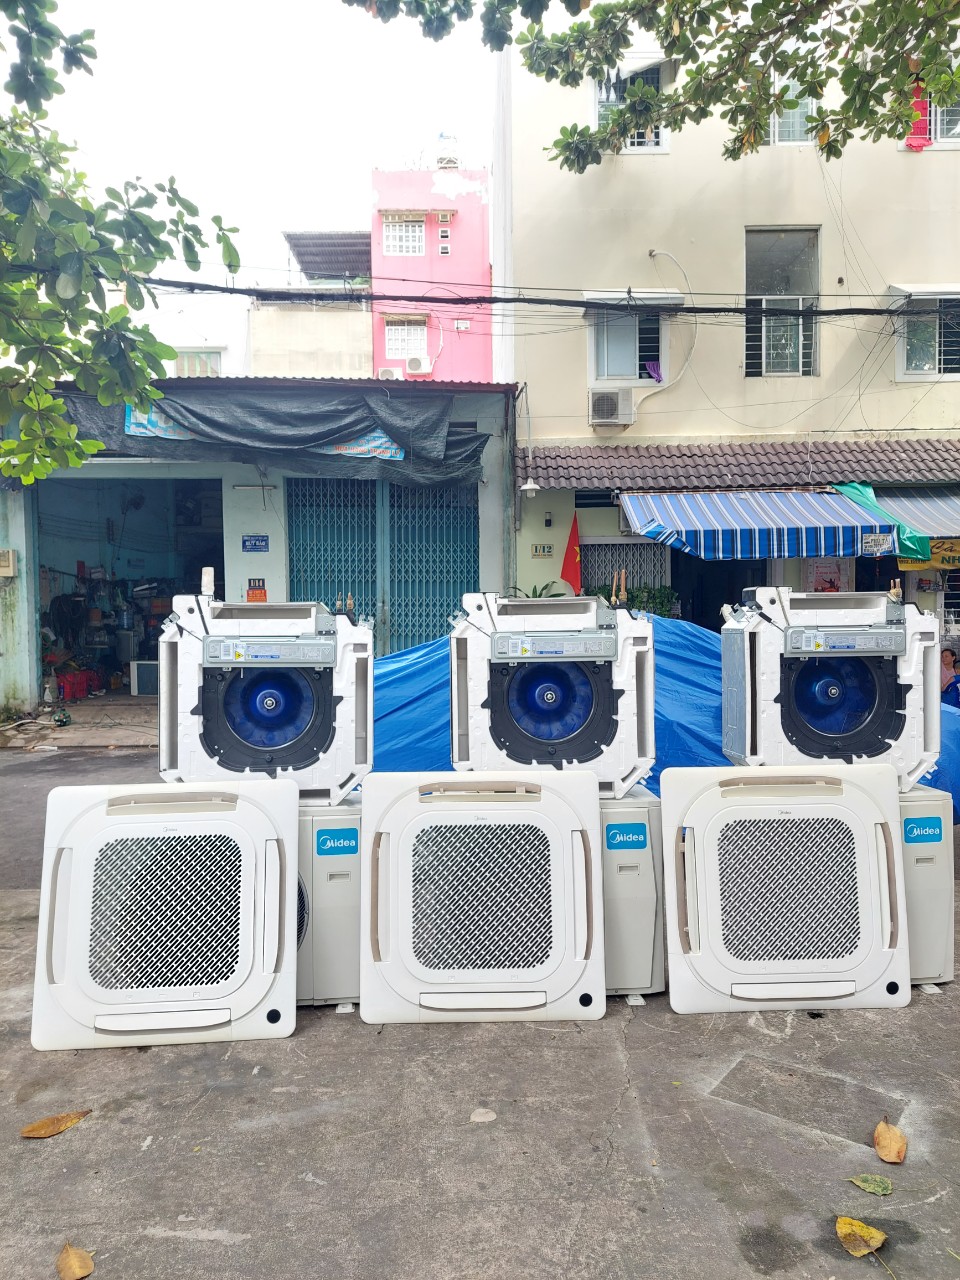 Mua bán máy lạnh cũ ở Bình Dương nhận thu mua tất cả các loại thiết bị điện lạnh của các hãng như: Sanyo, Hitachi, Electrolux, Toshiba, Panasonic...